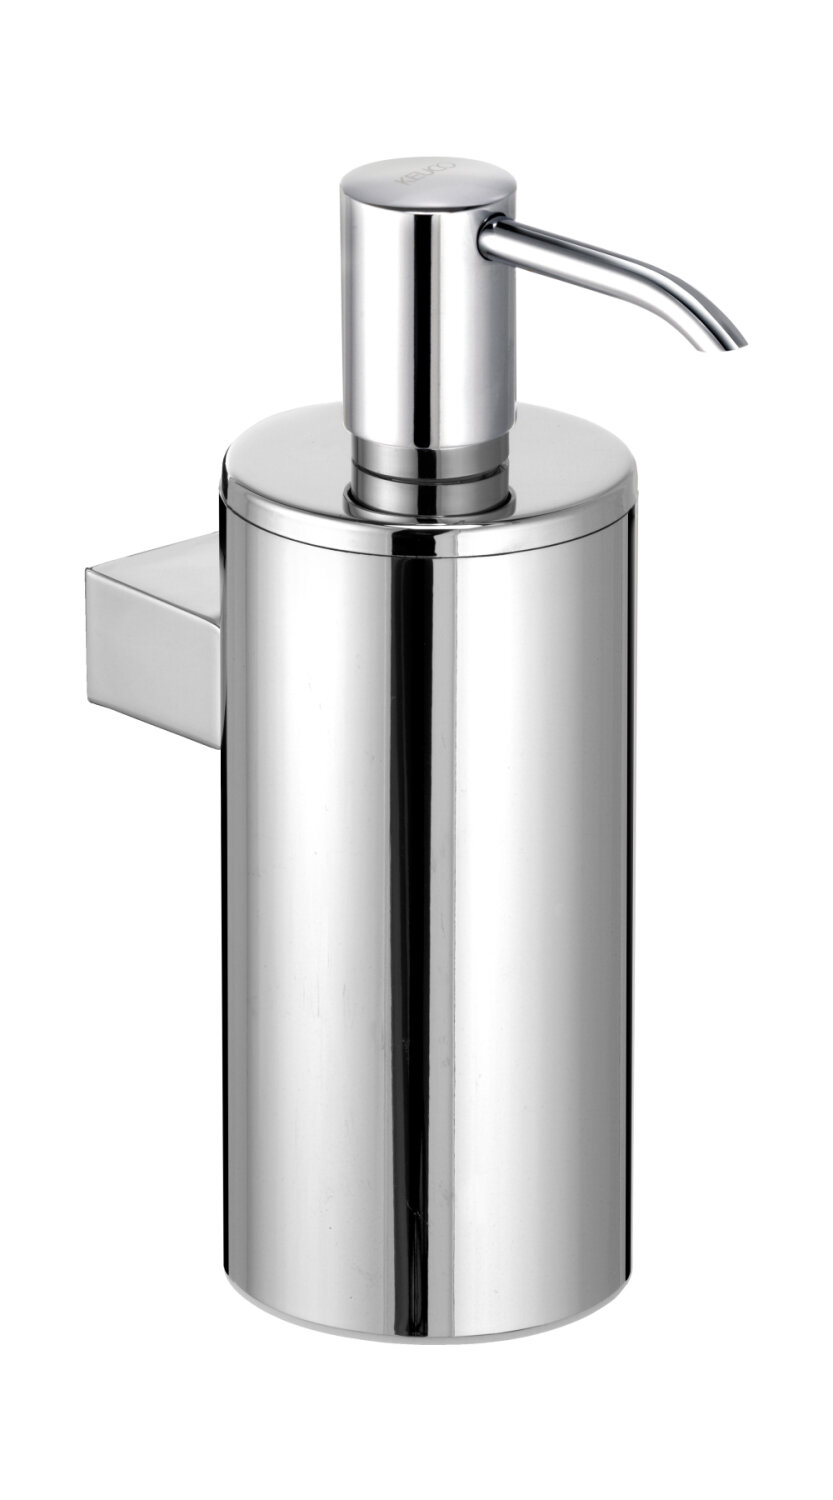 Дозатор для жидкого мыла Keuco Plan настенный, металл, хром 14953010100